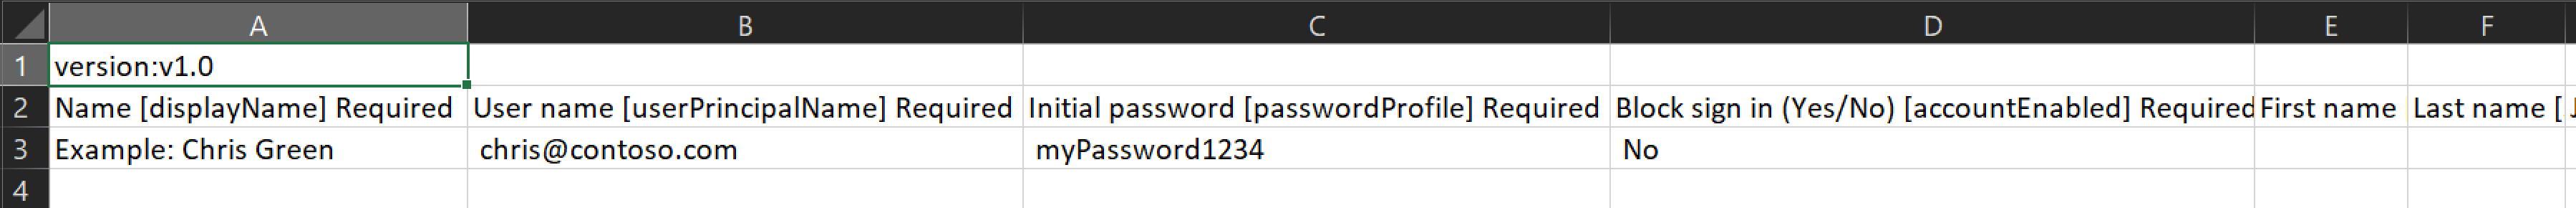 Captura de ecrã a mostrar um exemplo do ficheiro CSV que contém os nomes e IDs dos utilizadores a criar.